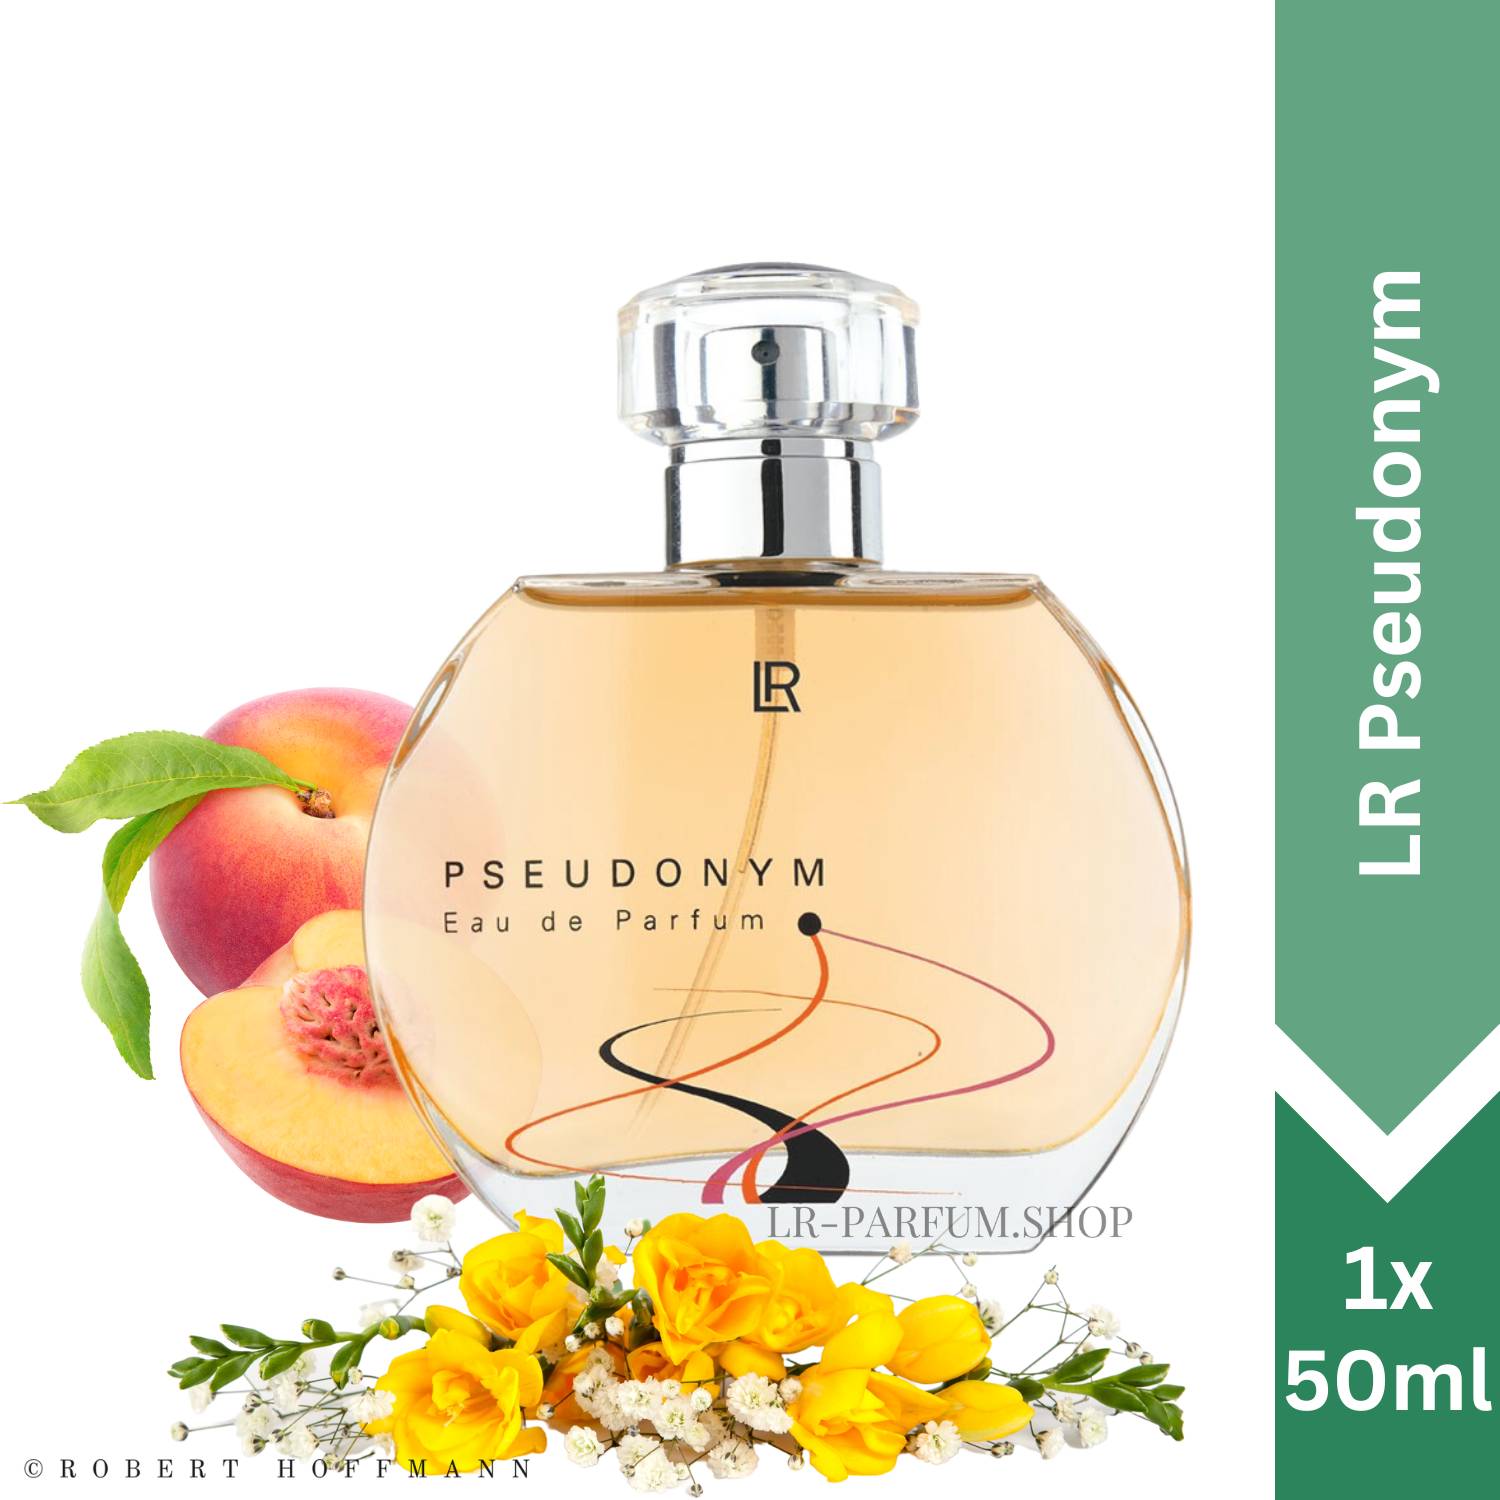 LR Pseudonym - Eau de Parfum 50ml - LR-Parfum.shop